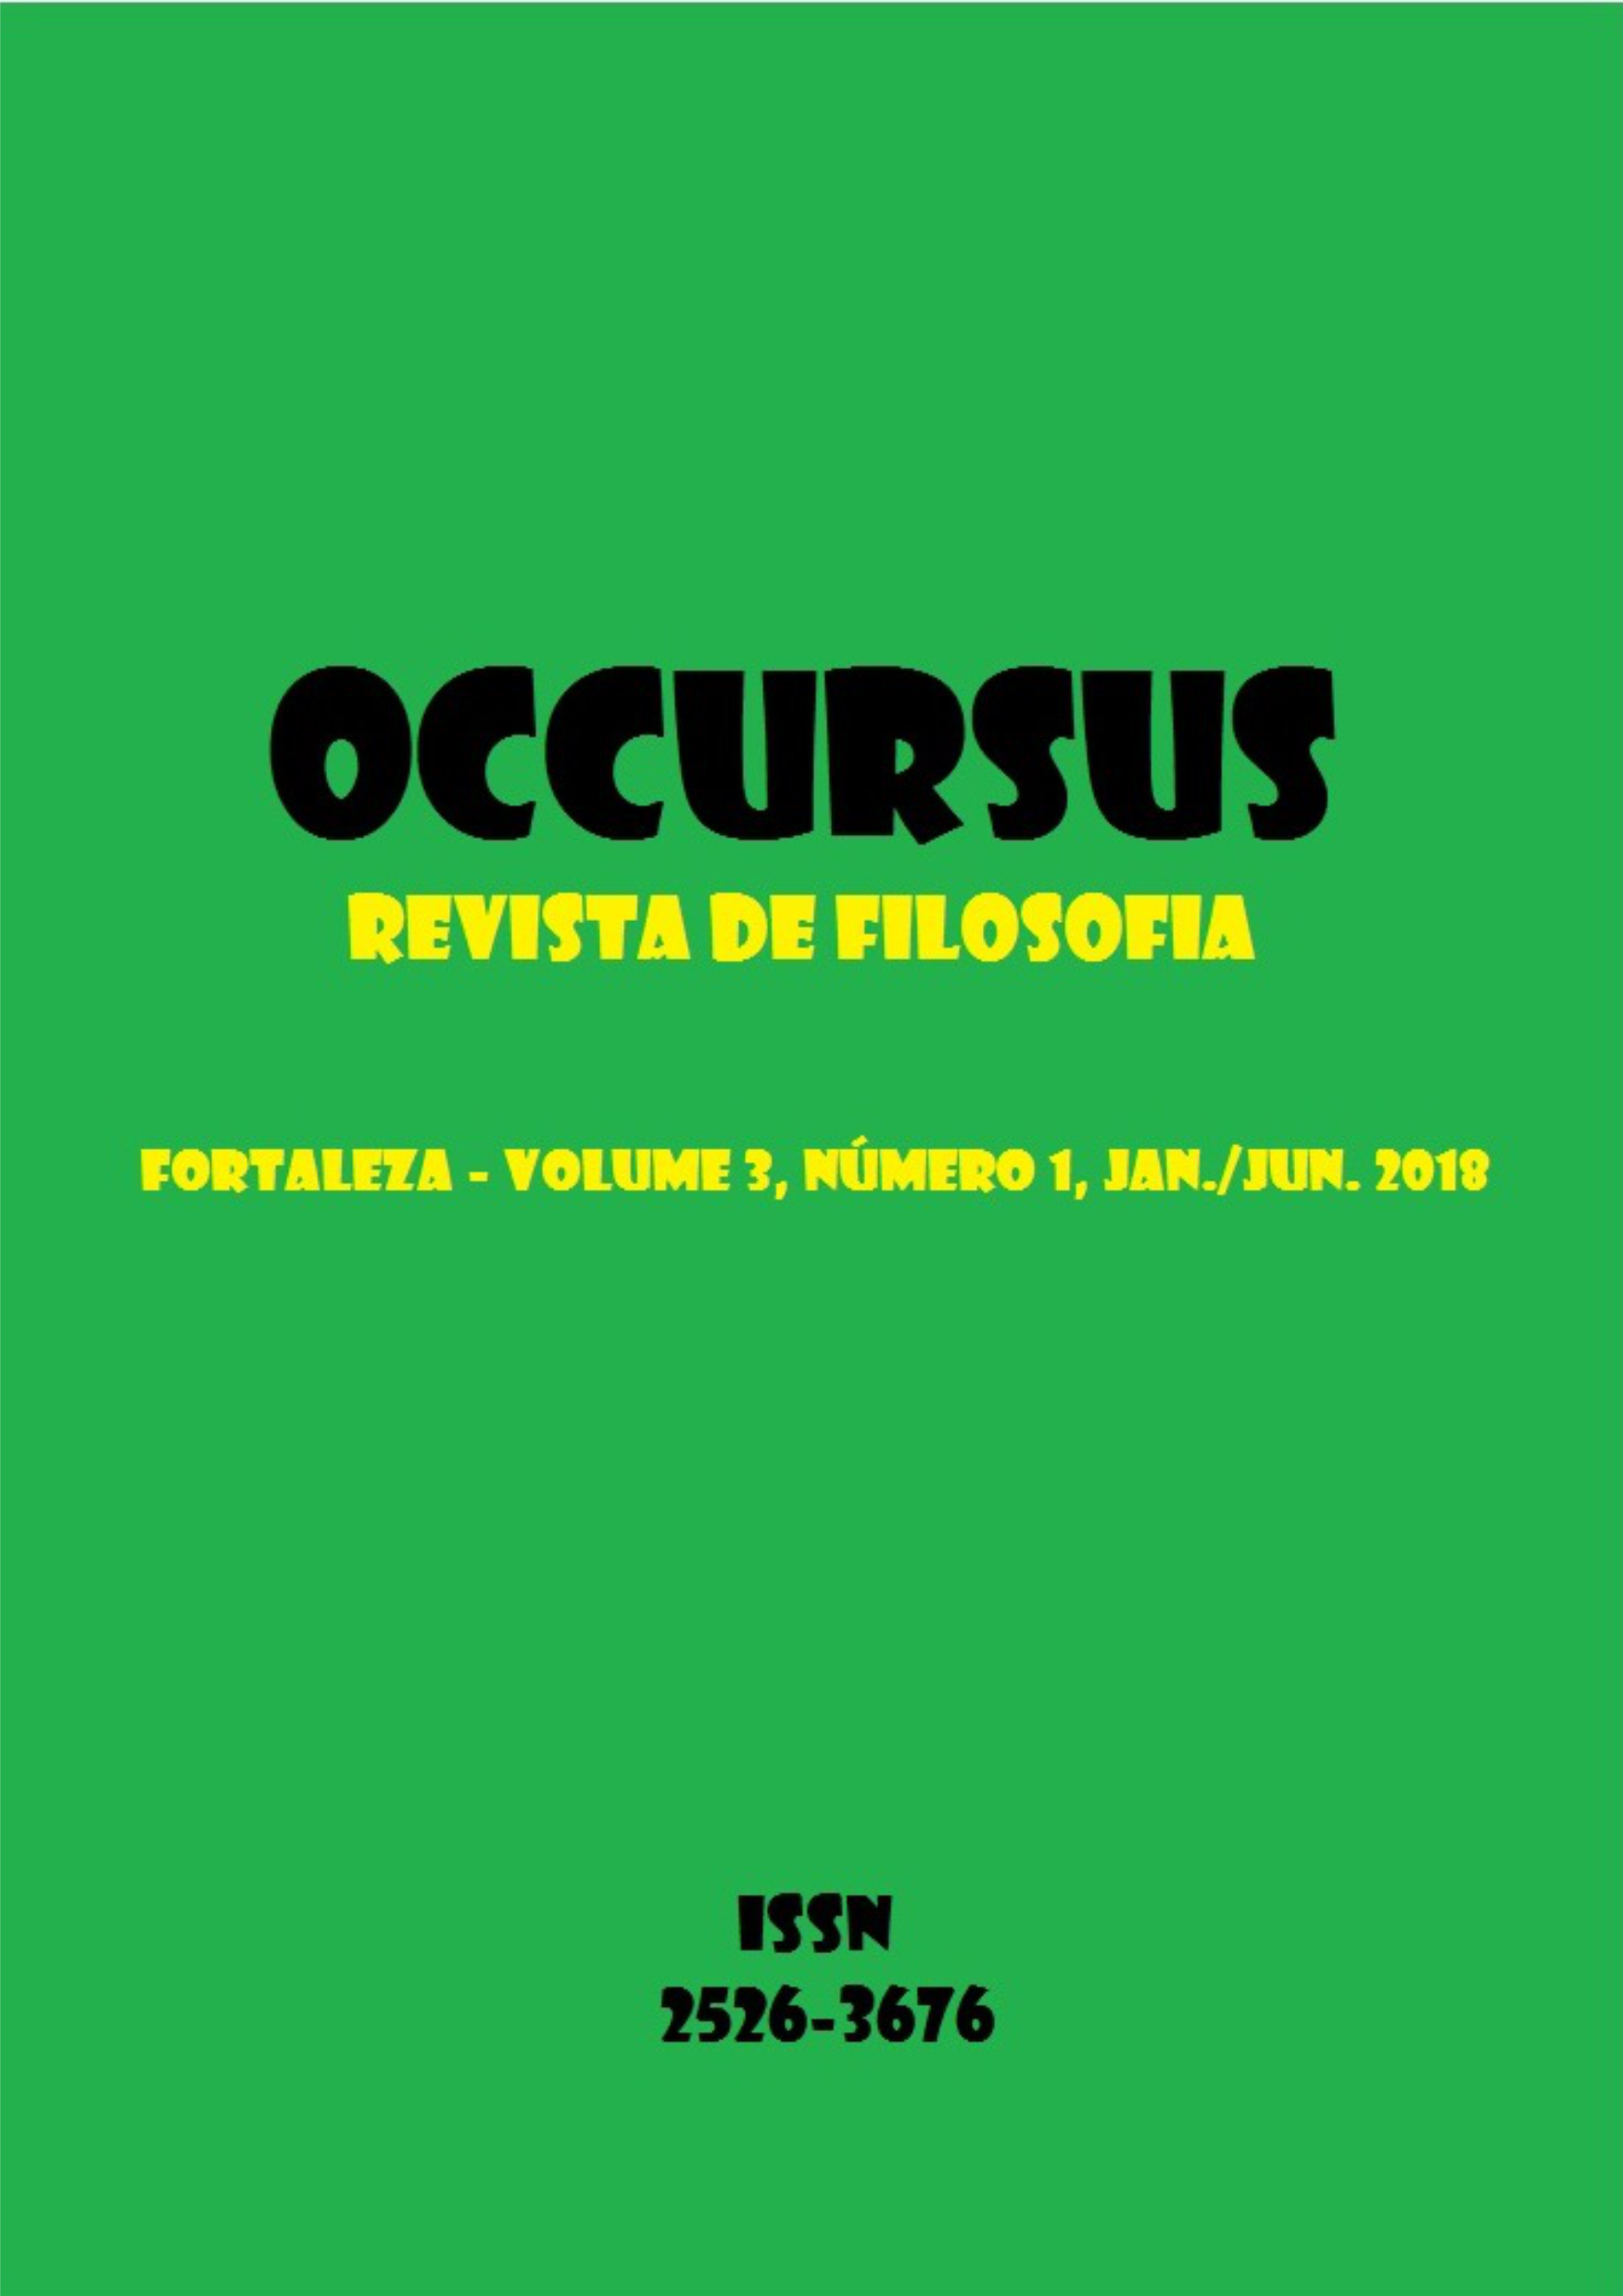 Occursus - Revista de Filosofia - V3N1 - Jan./Jun. 2018